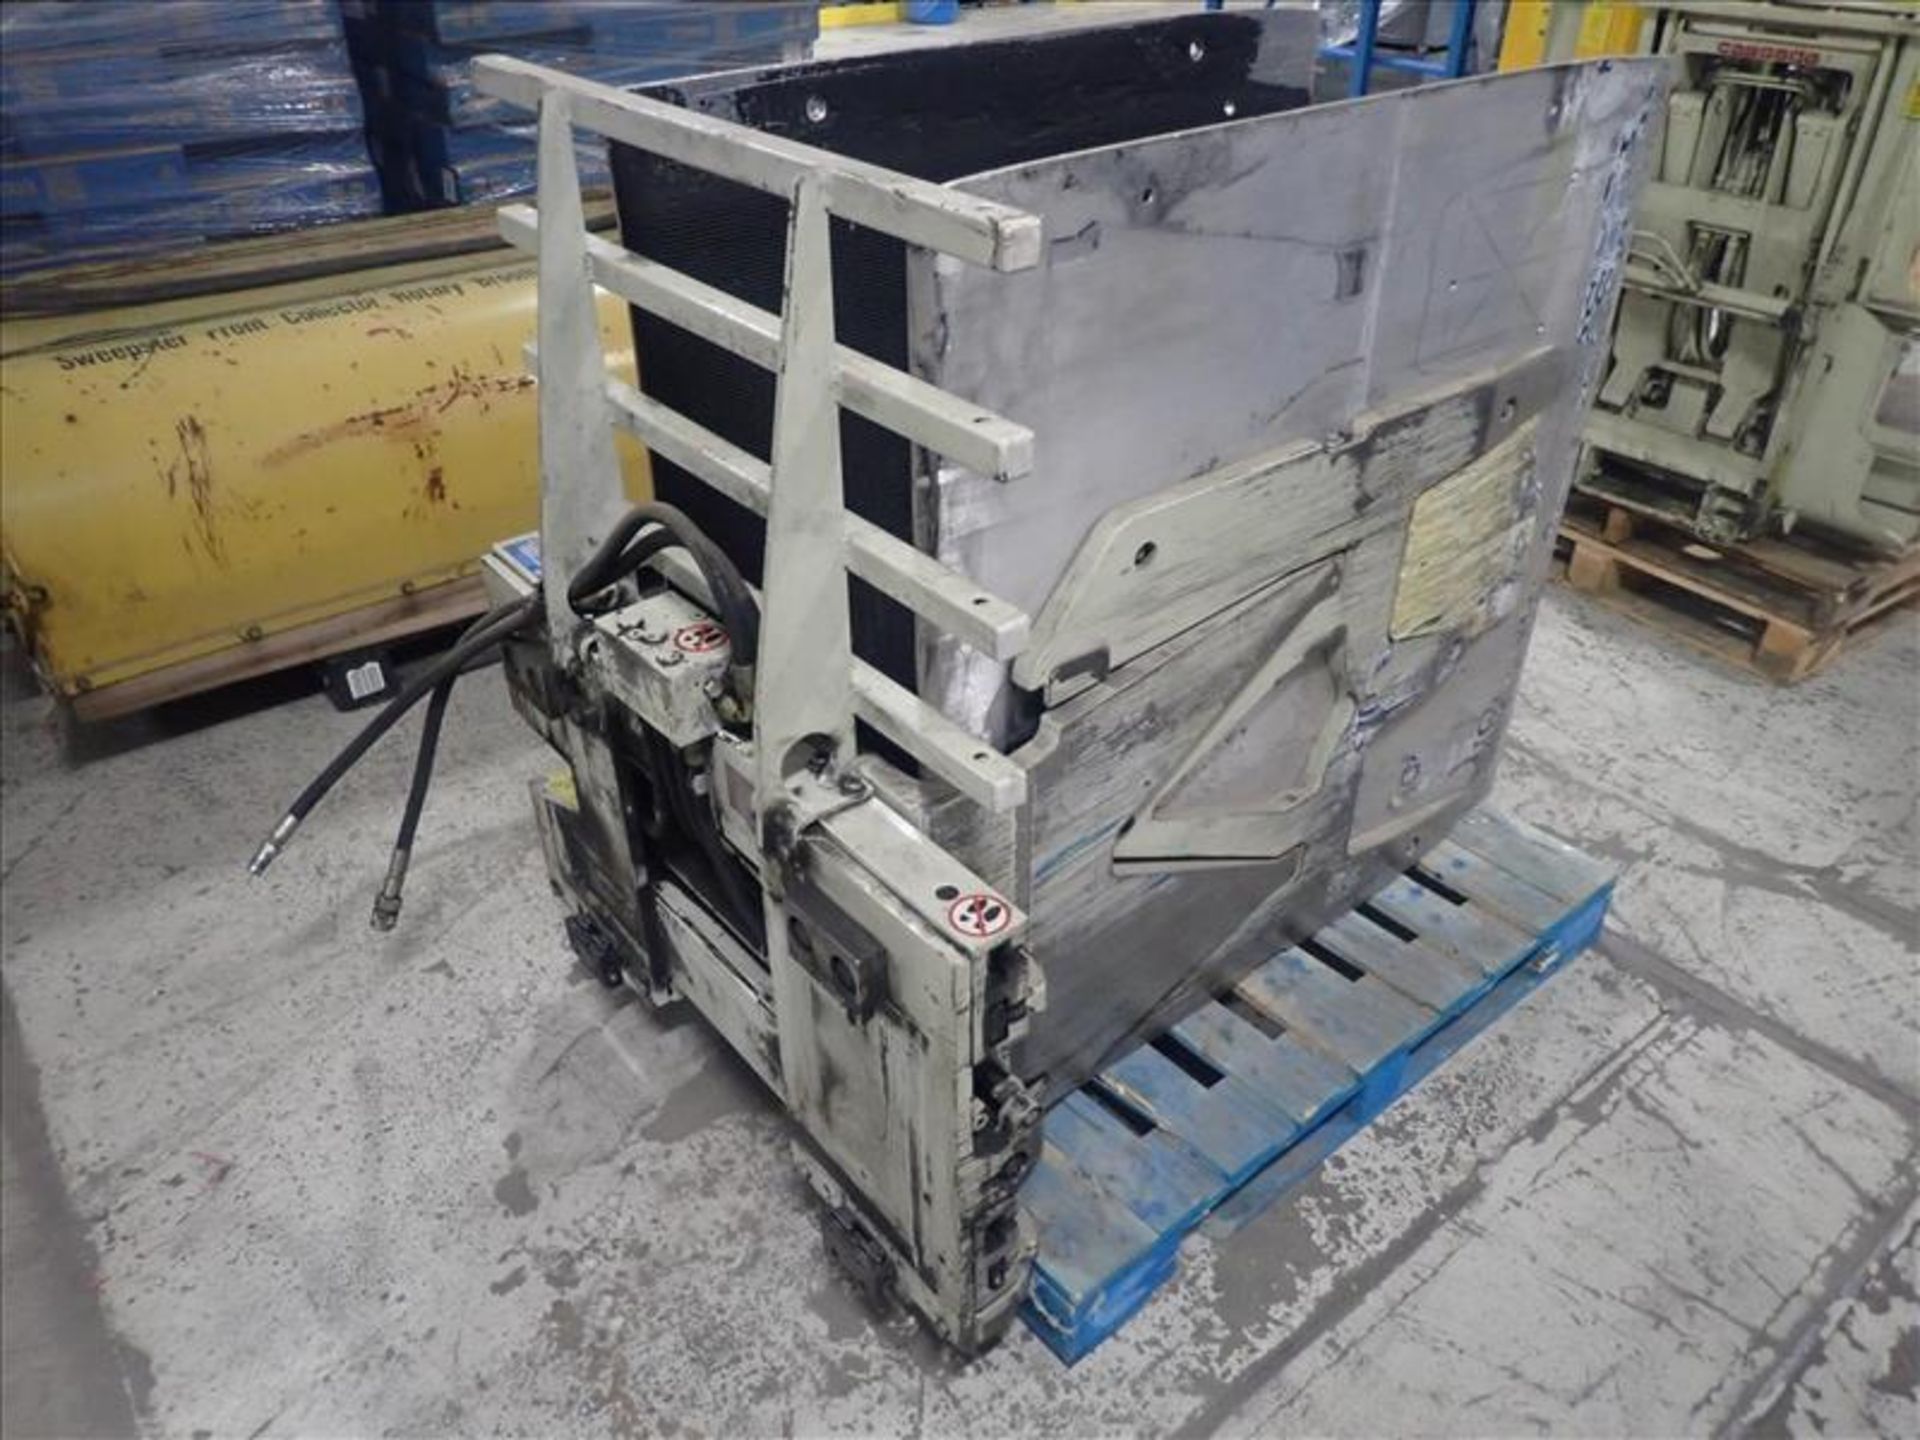 Cascade carton clamp lift truck attachment, mod. 25D-CCS-35Q0, 2500 lbs cap. - Image 2 of 4